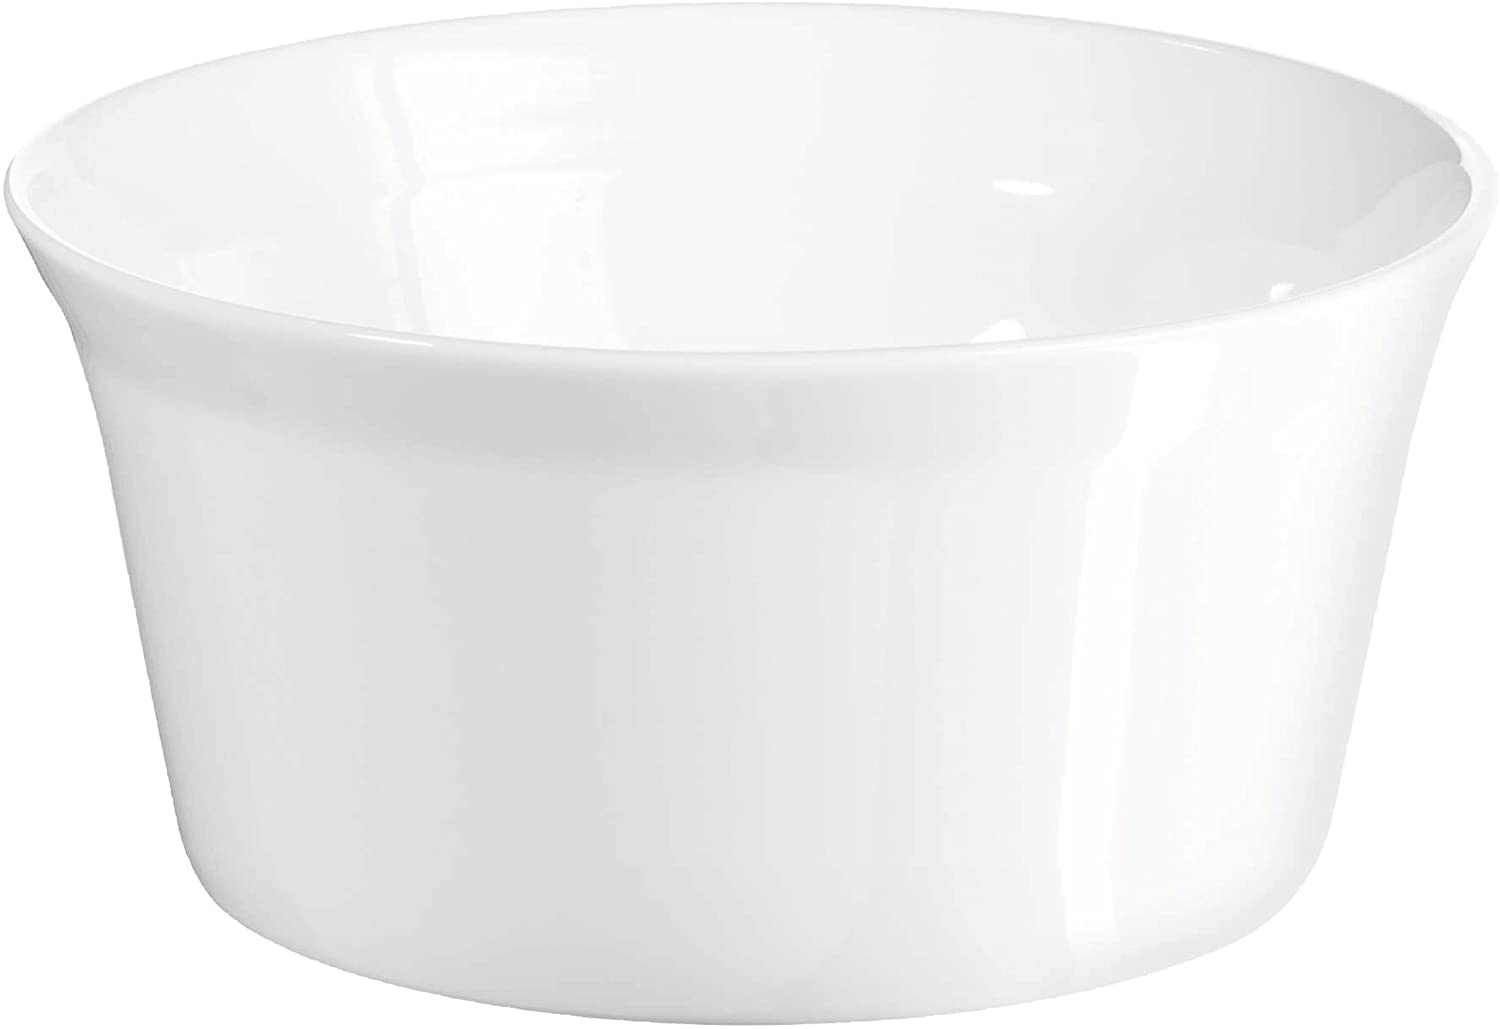 ASA Soufflé mould, porcelain, white, 20 x 20 x 9 cm